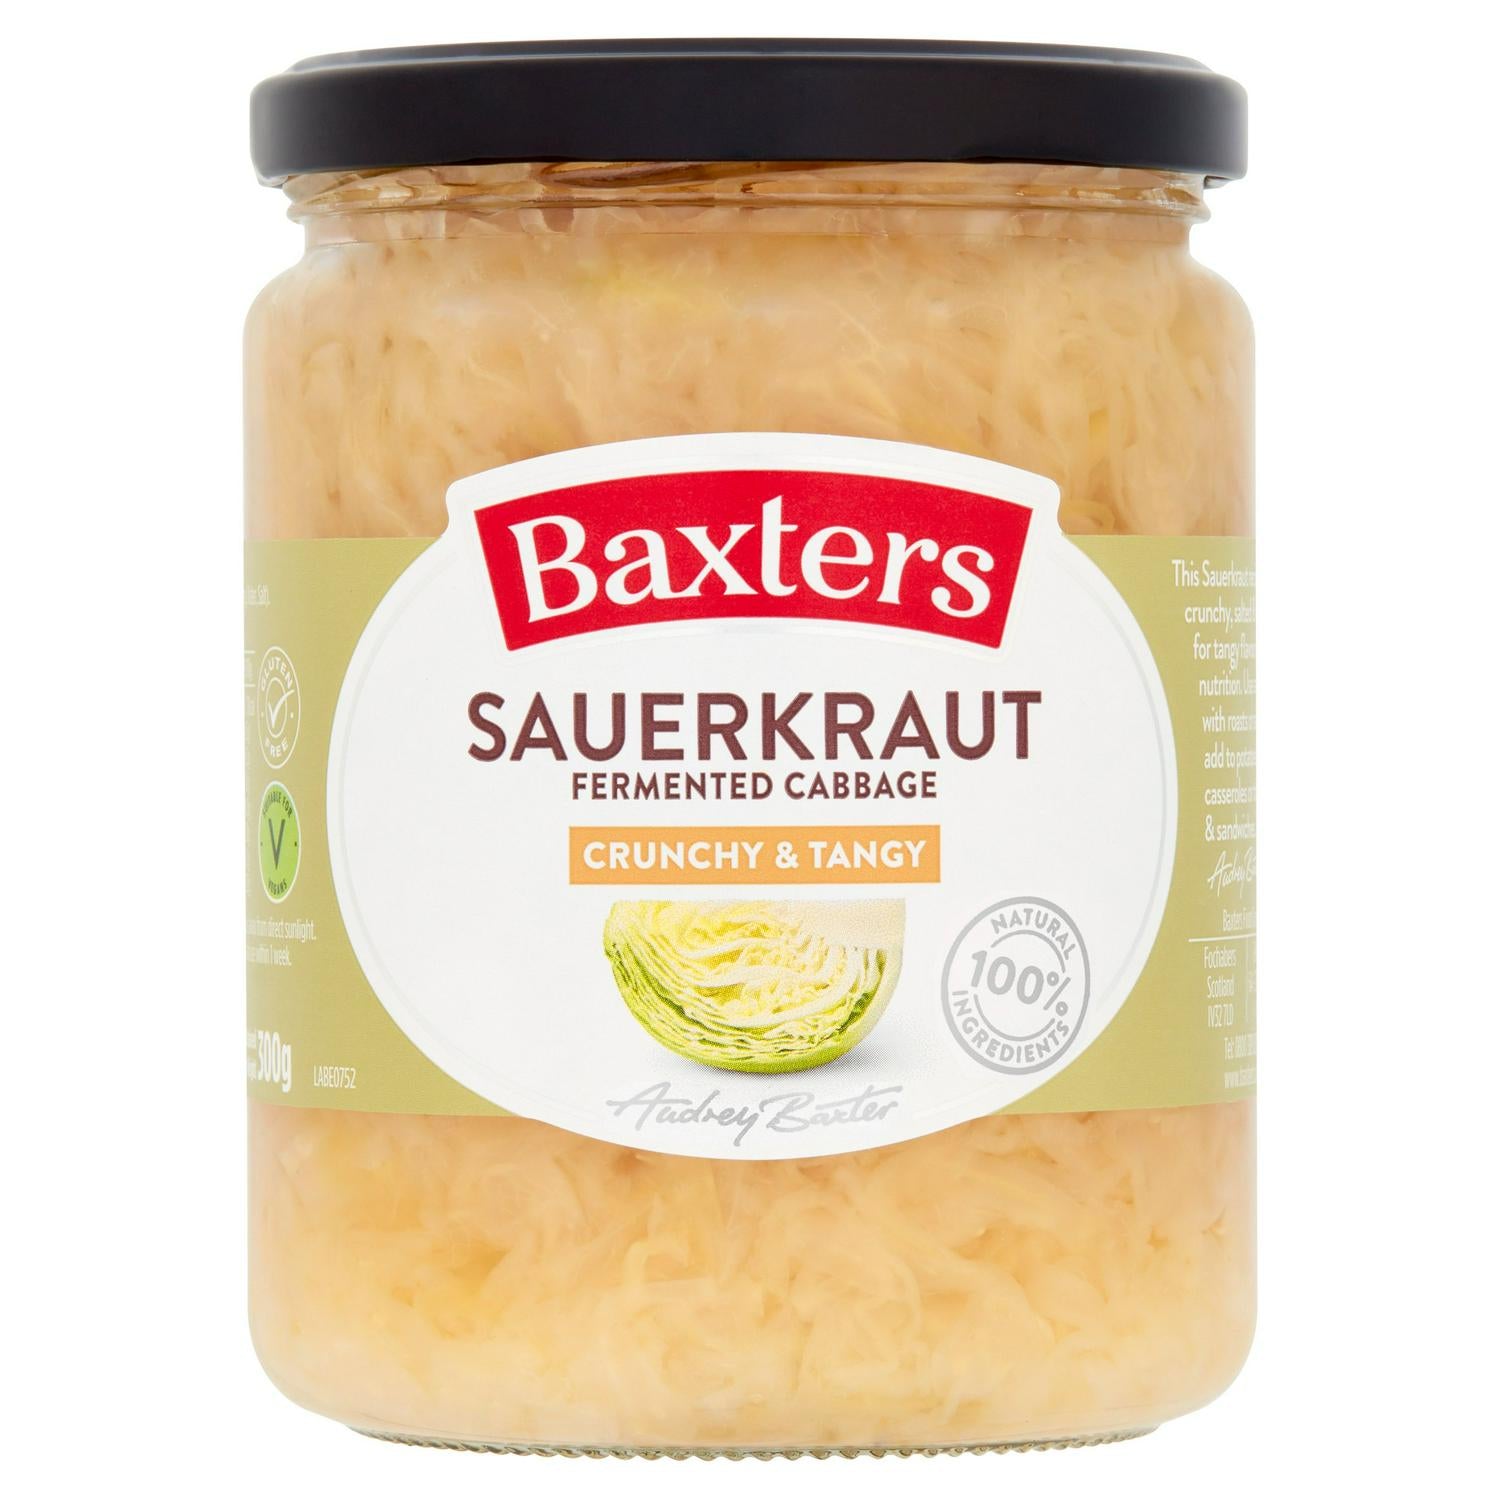 Baxters Sauerkraut Fermented Cabbage 480g